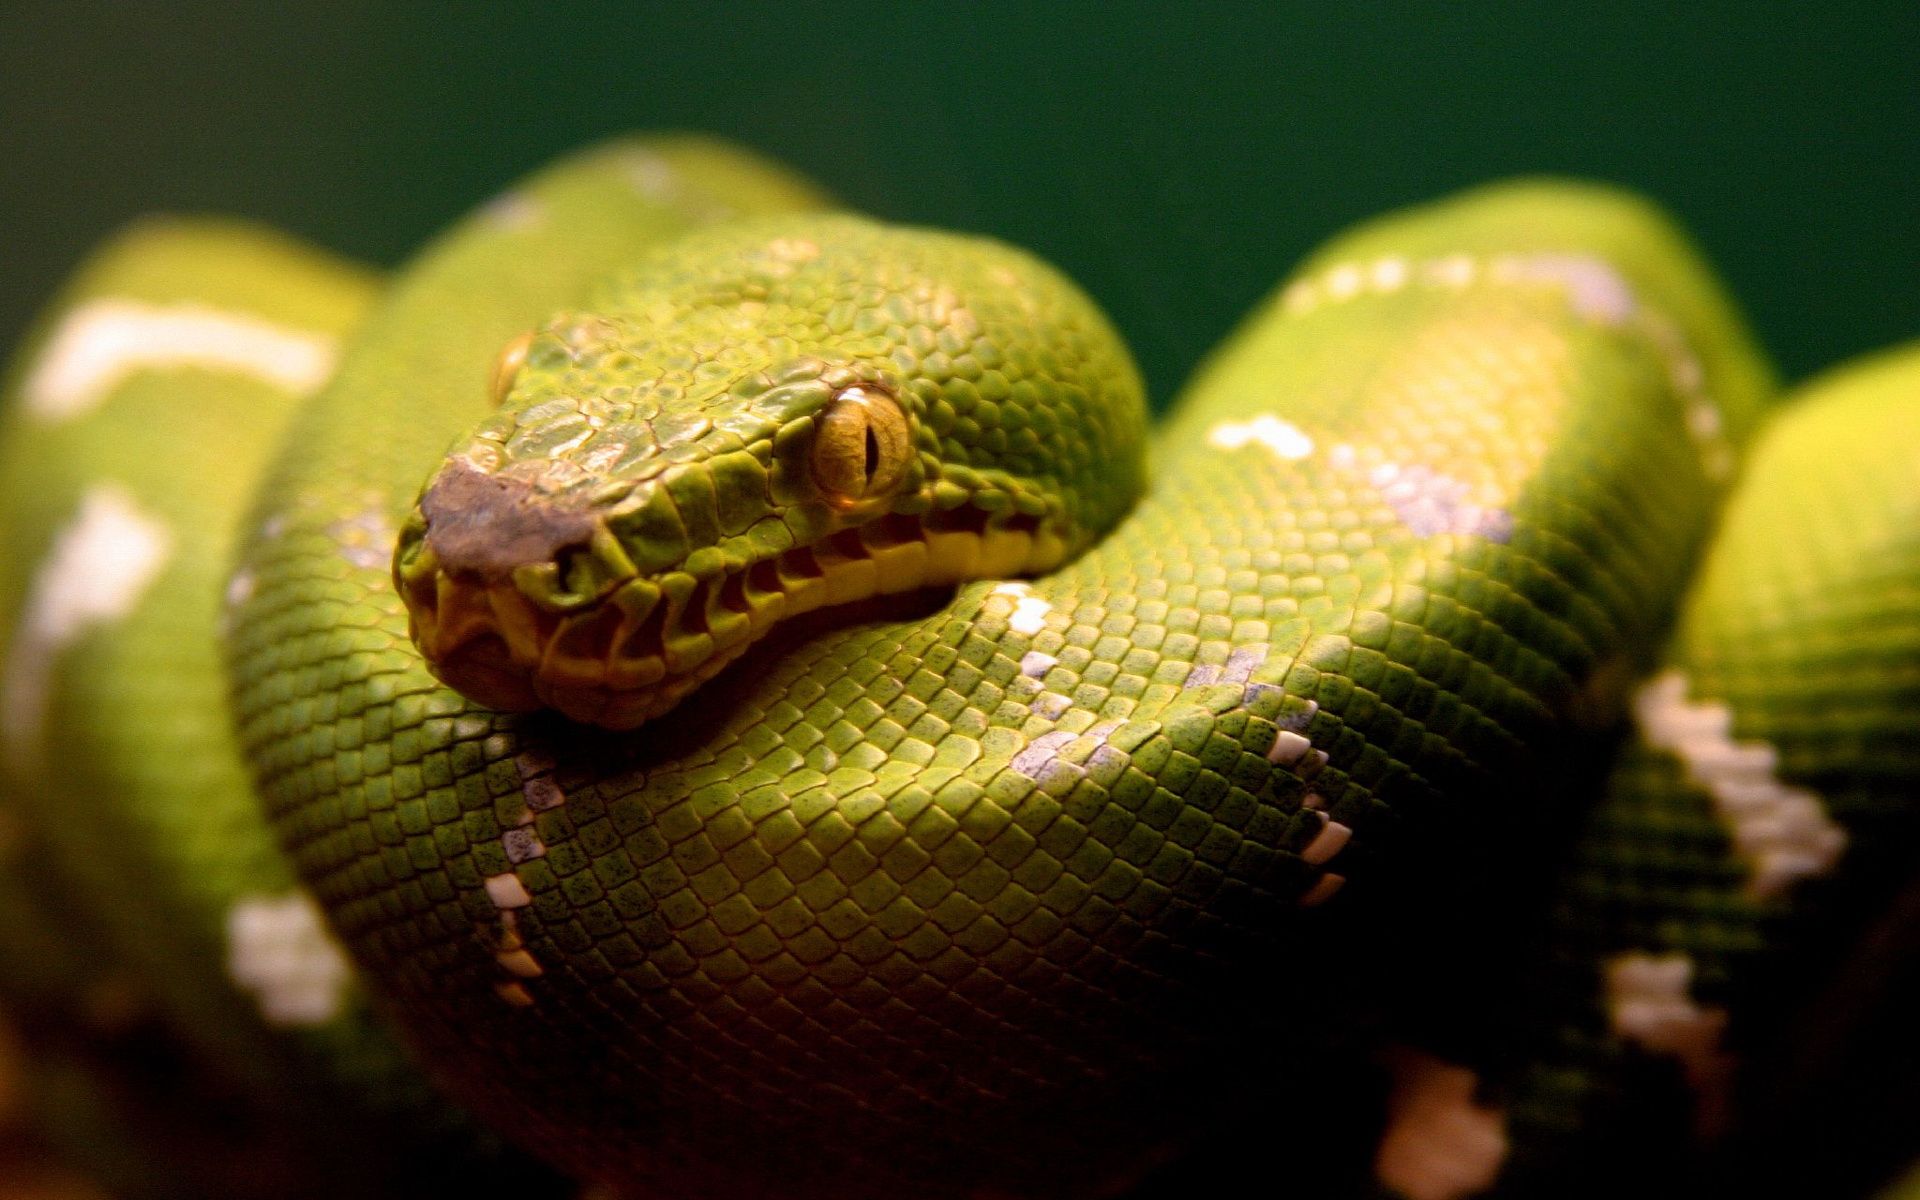 Green snake wallpaper. Green snake